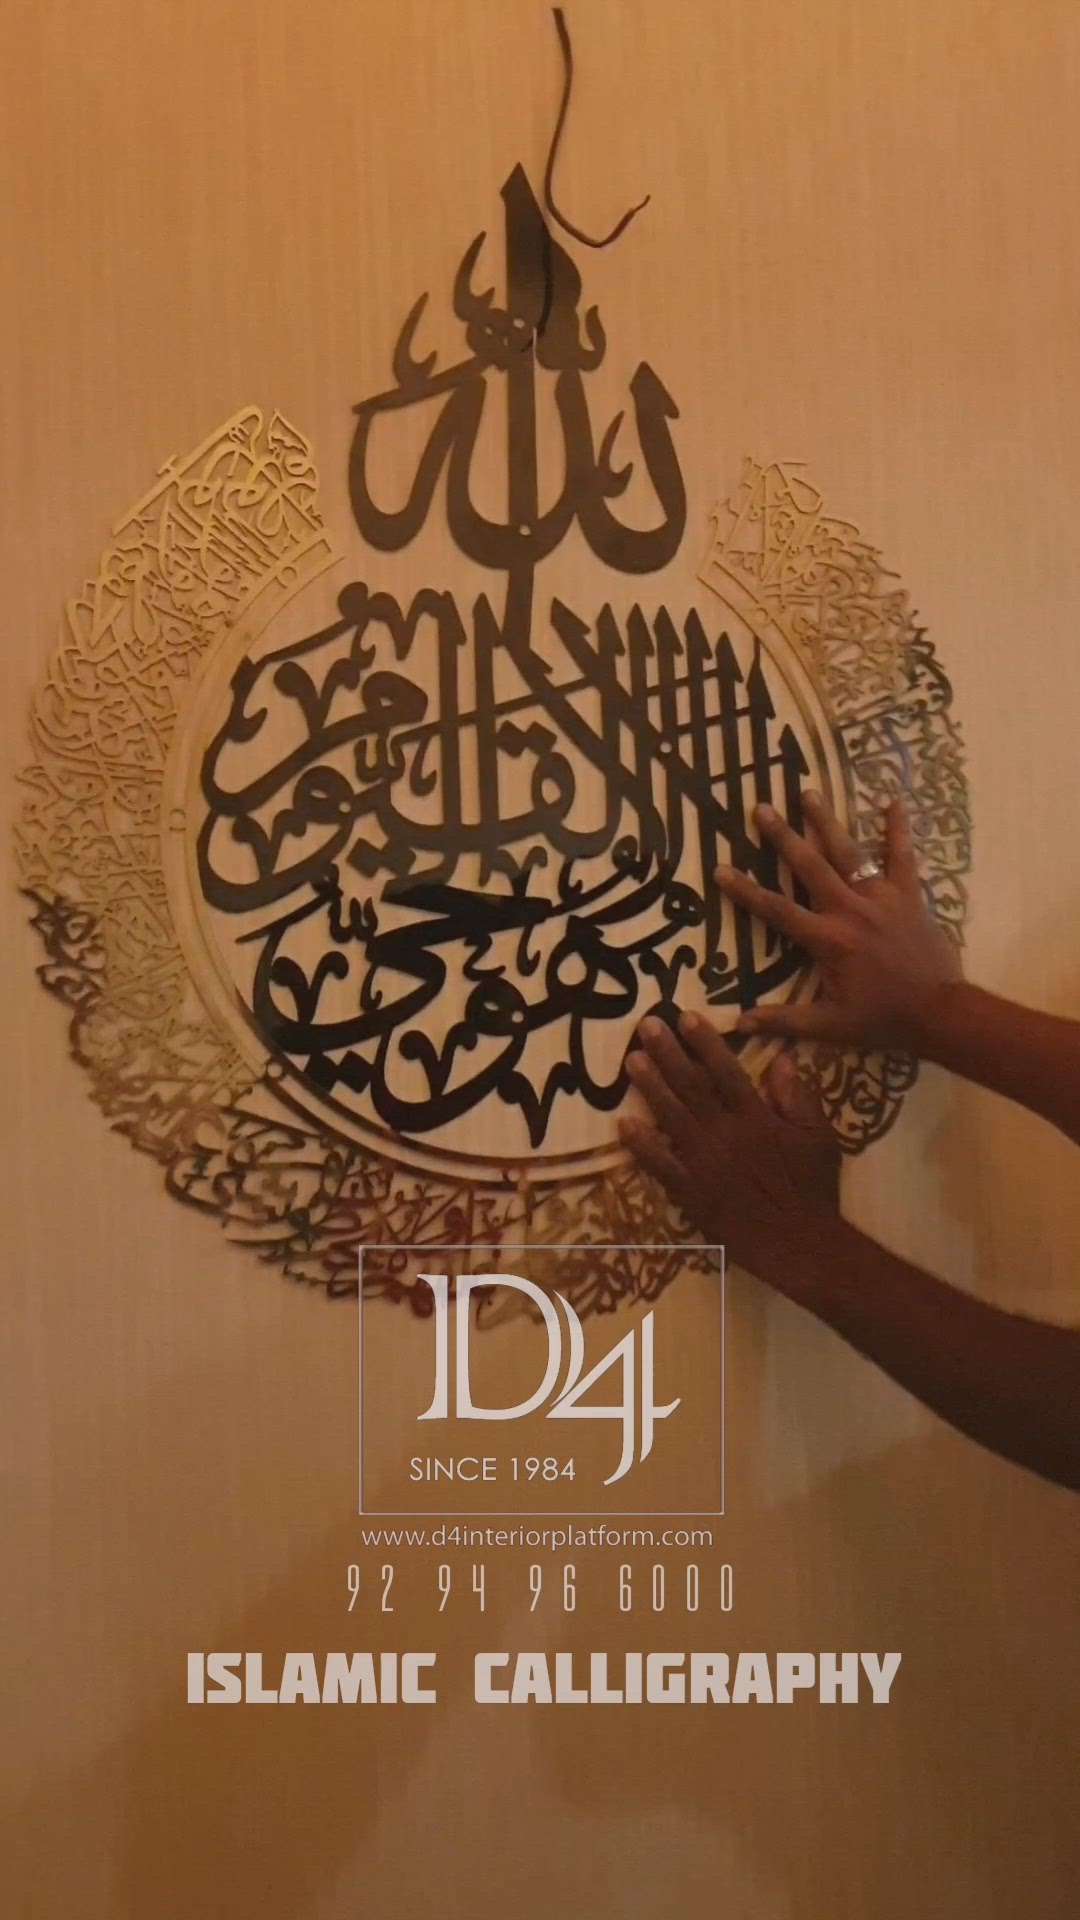 Islamic calligraphy #calligraphy #arabic_calligraphy #islamicart